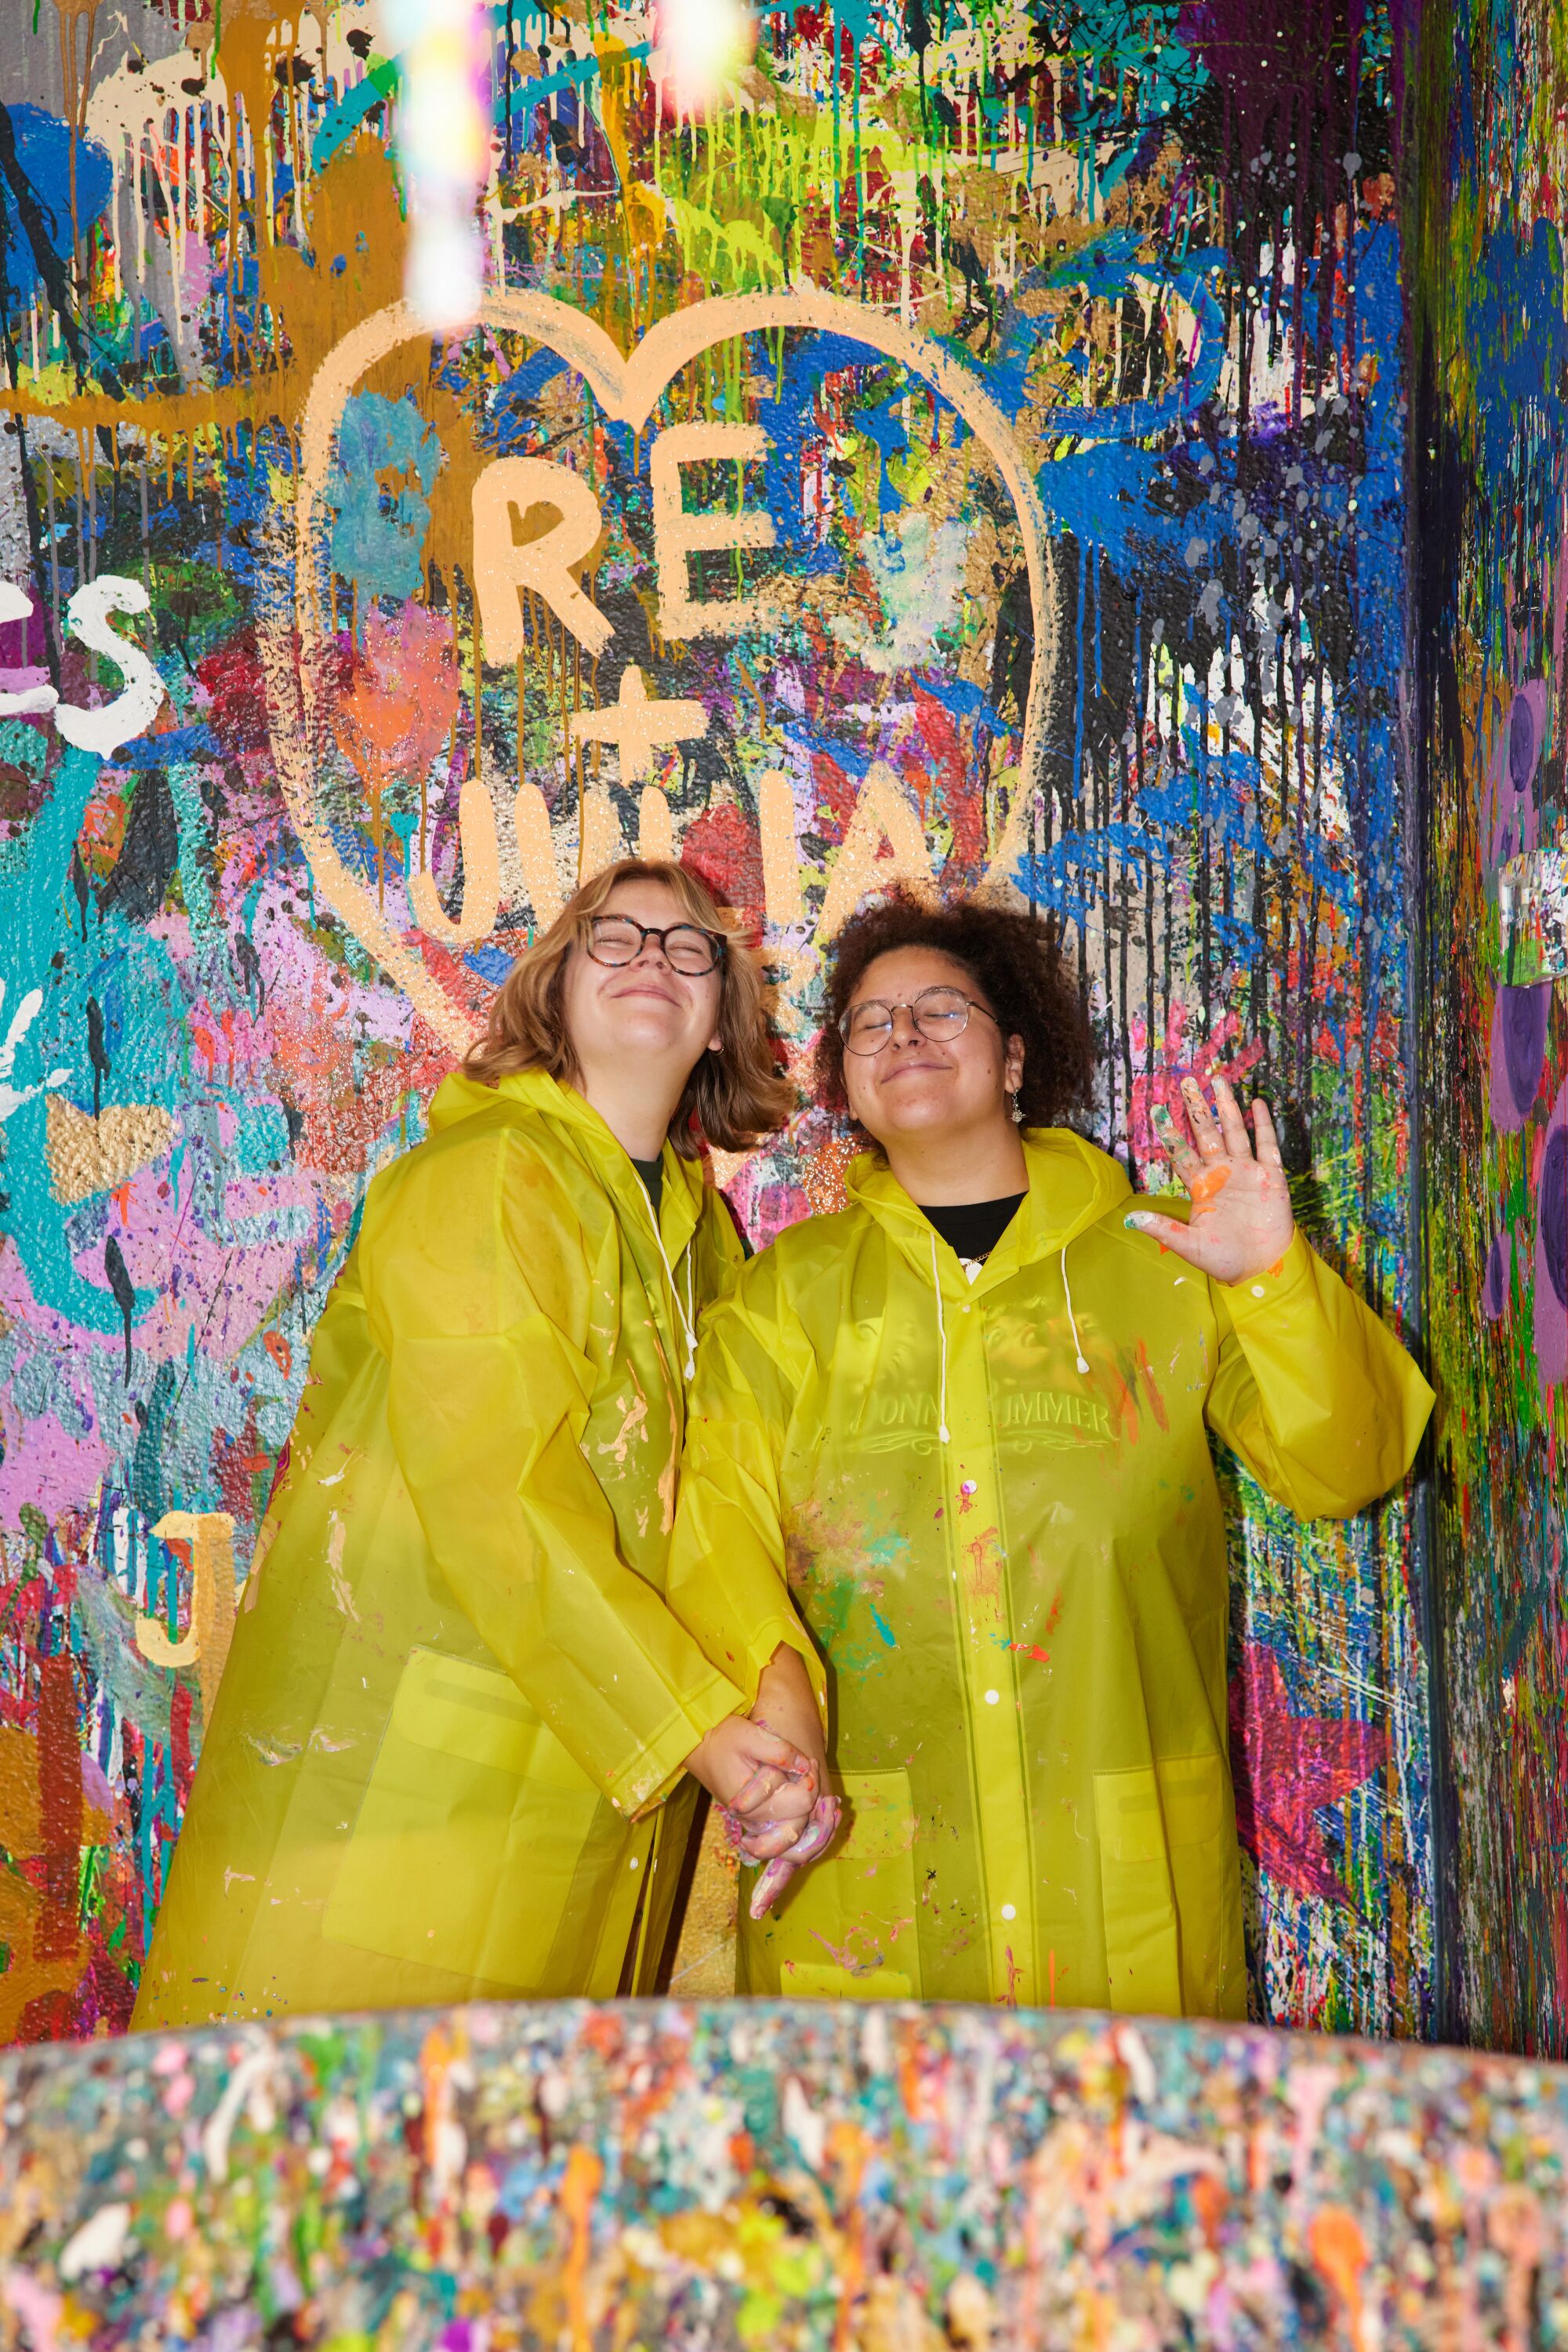 Sarı yağmurluklar giyen iki kişi, çok renkli duvara boyanmış bir kalbin önünde poz veriyor.